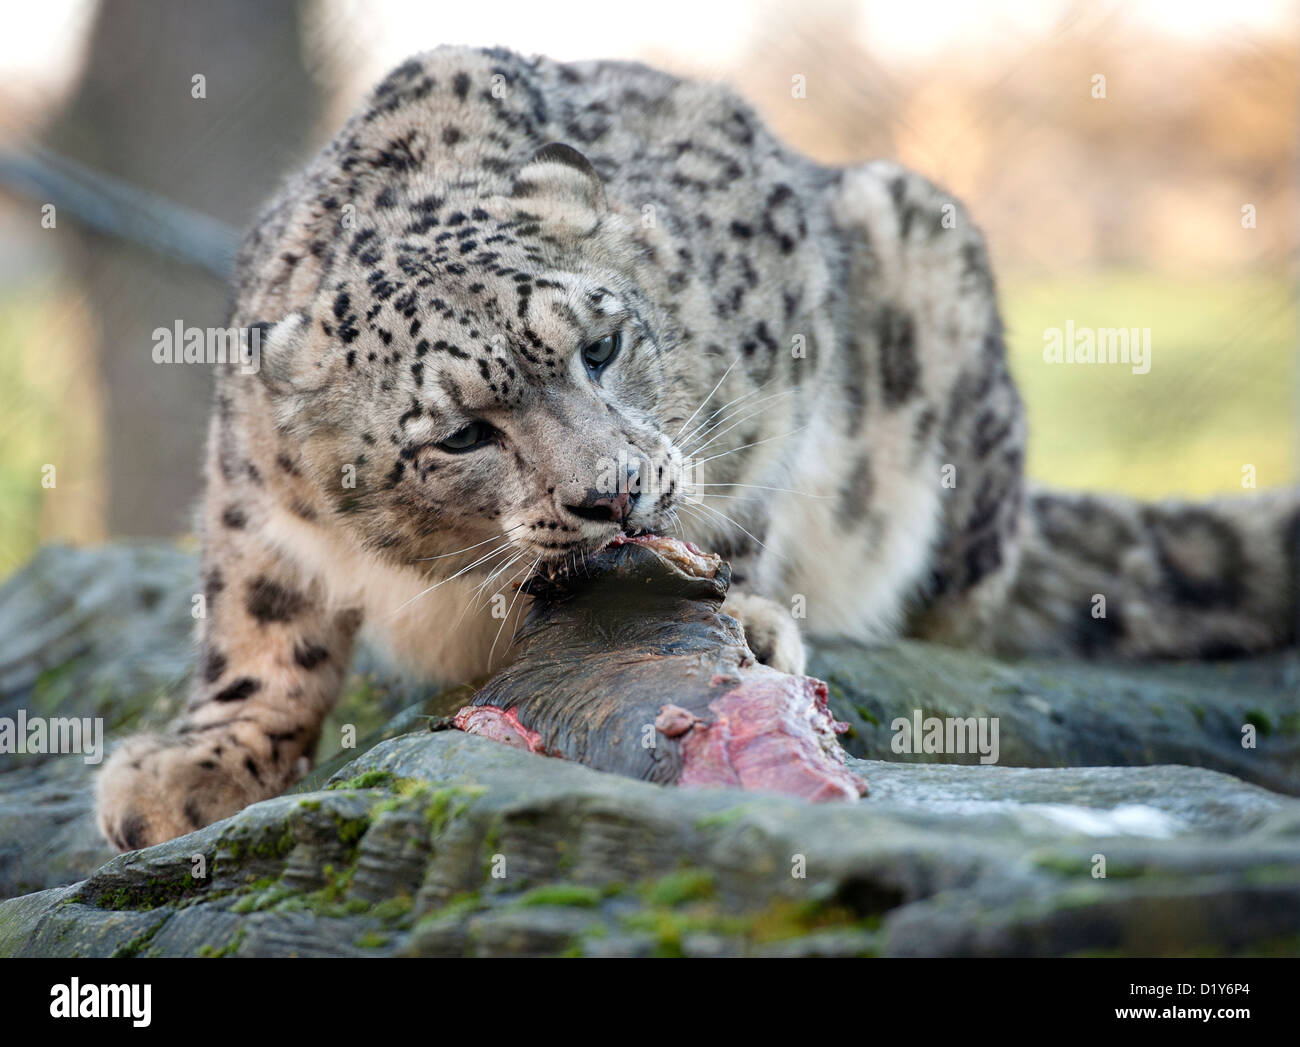 Homme snow leopard de manger de la viande Banque D'Images